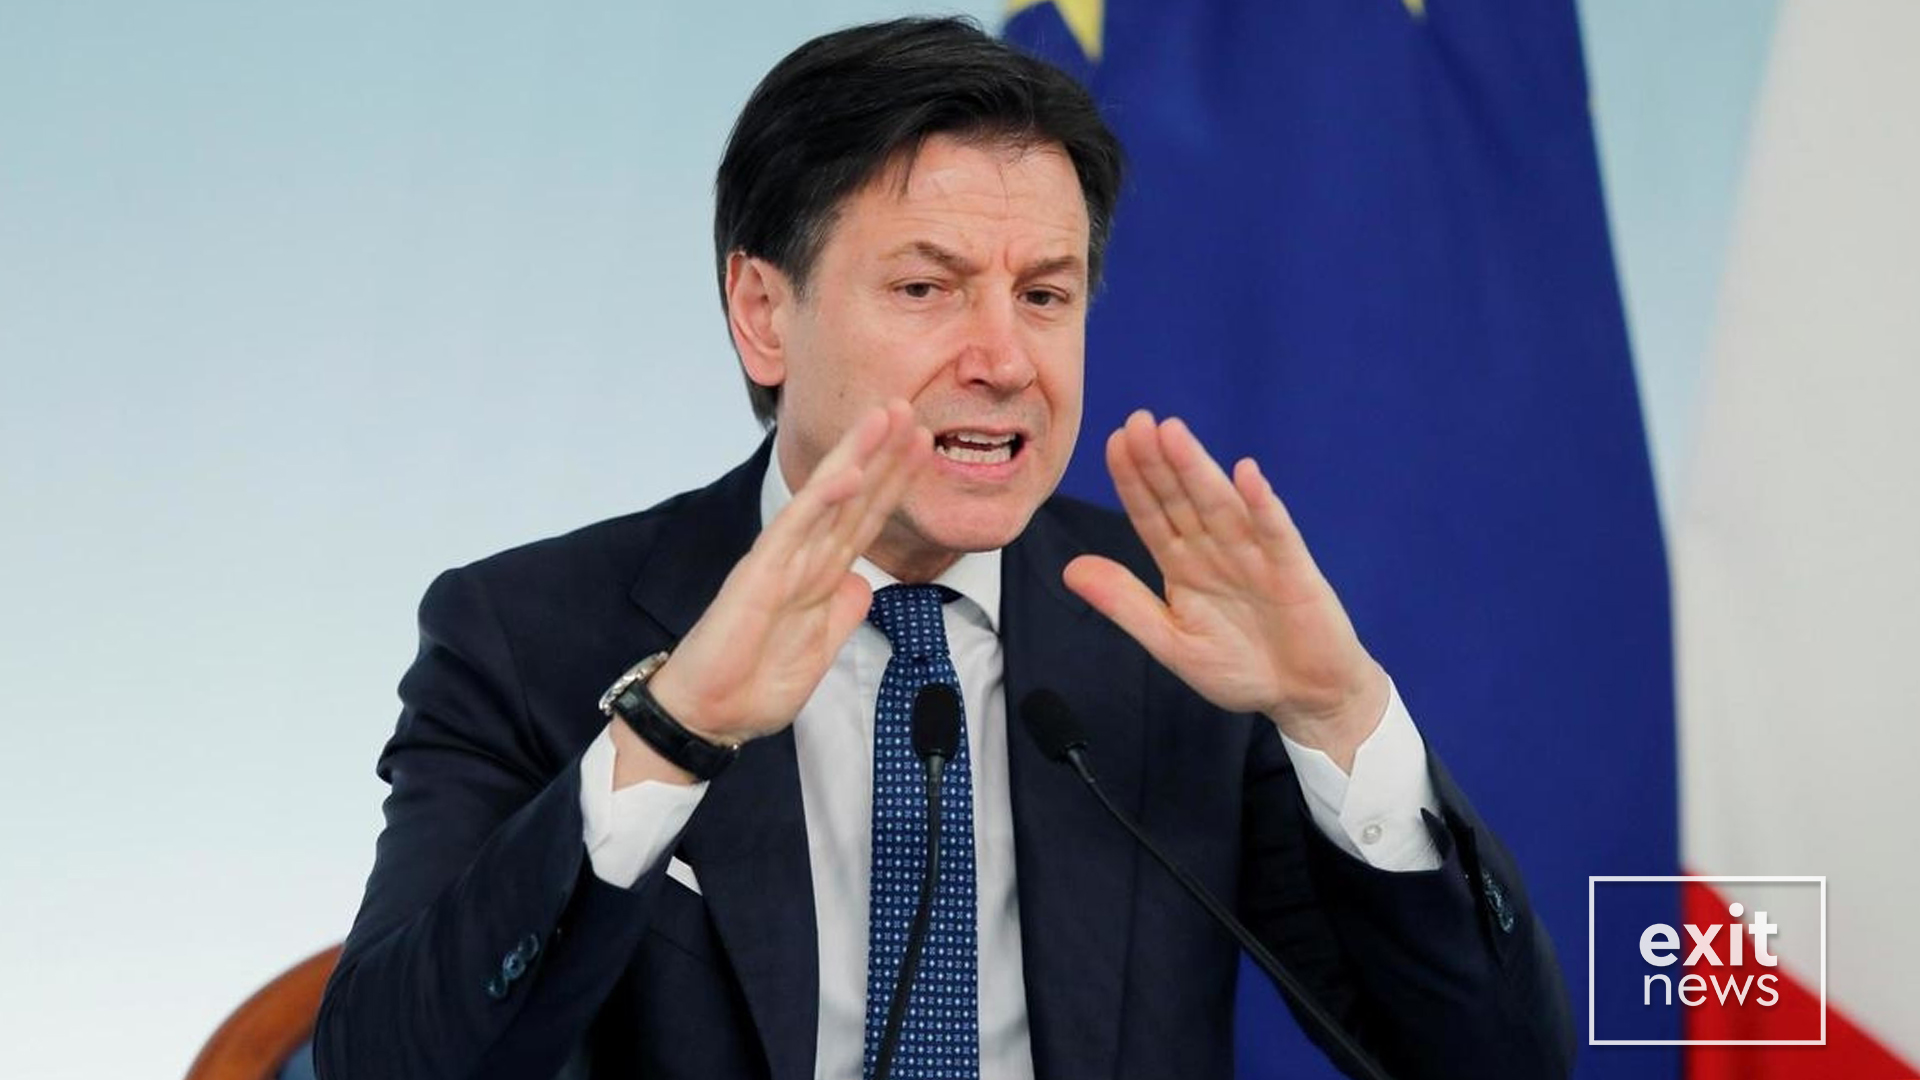 Prokurorët italianë marrin në pyetje Kryeministrin Conte për mbylljen nga koronavirusi